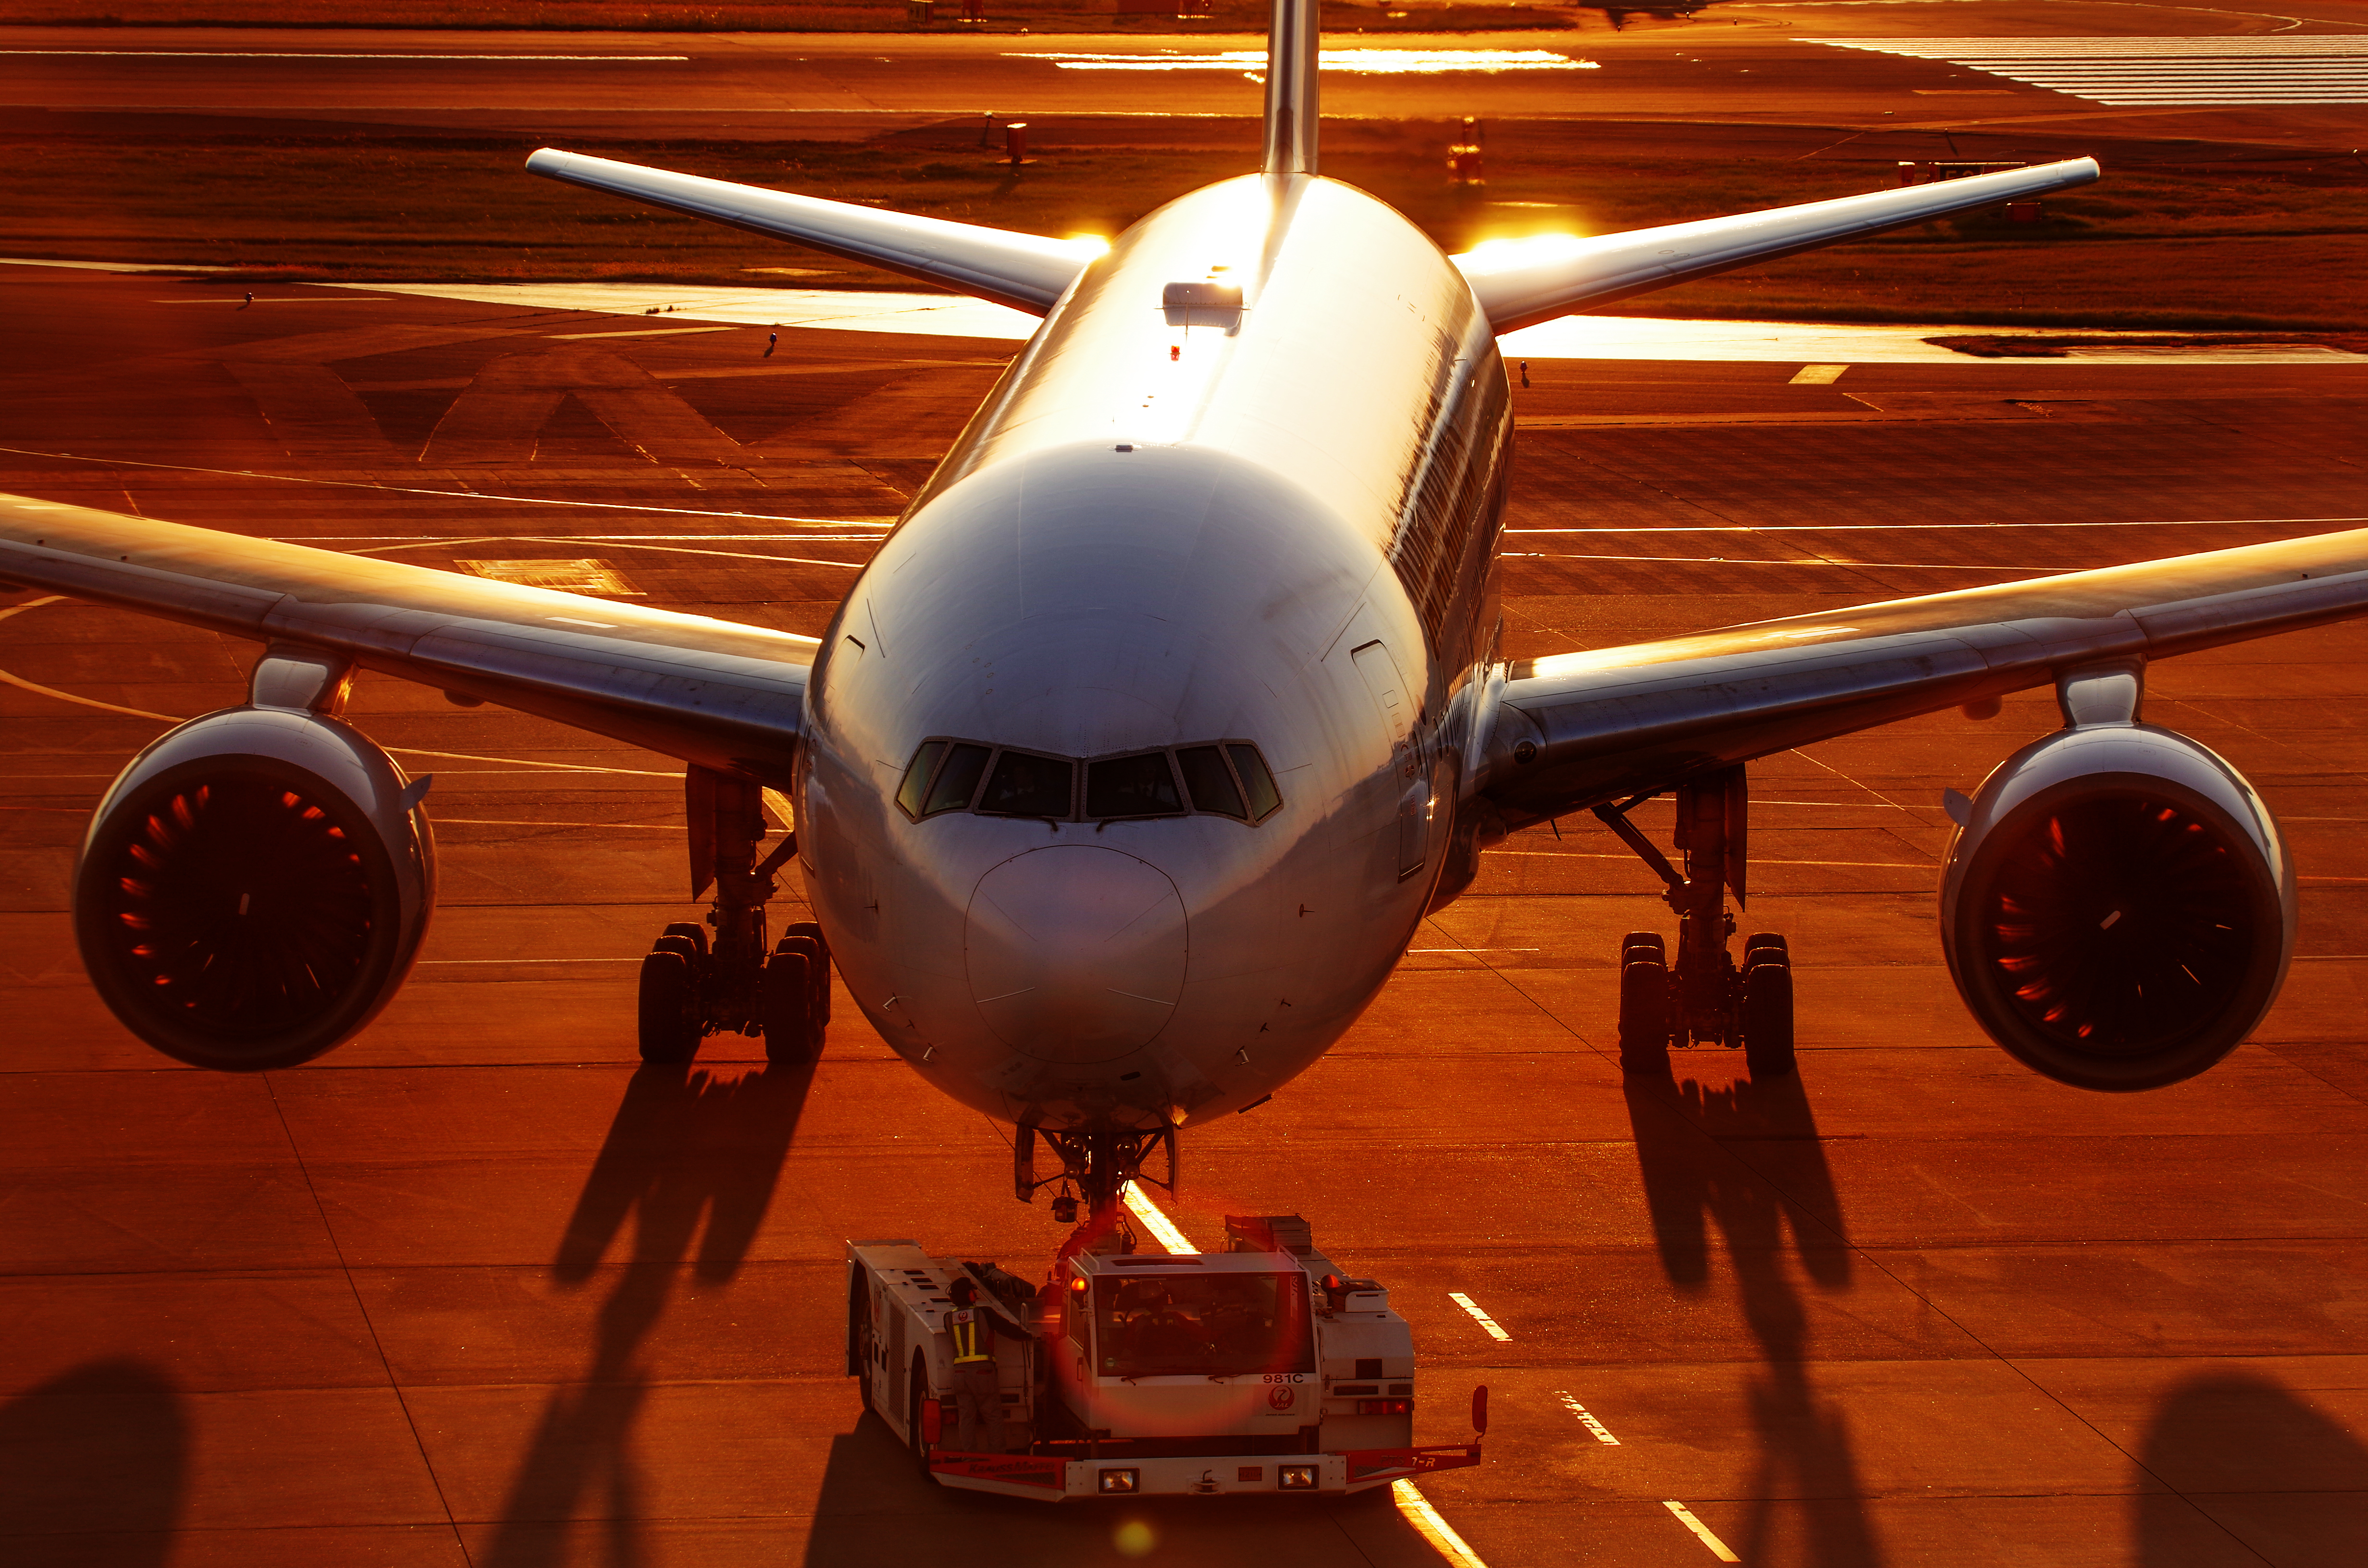 Скачать обои бесплатно Самолет, Транспортные Средства, Пассажирский Самолет картинка на рабочий стол ПК